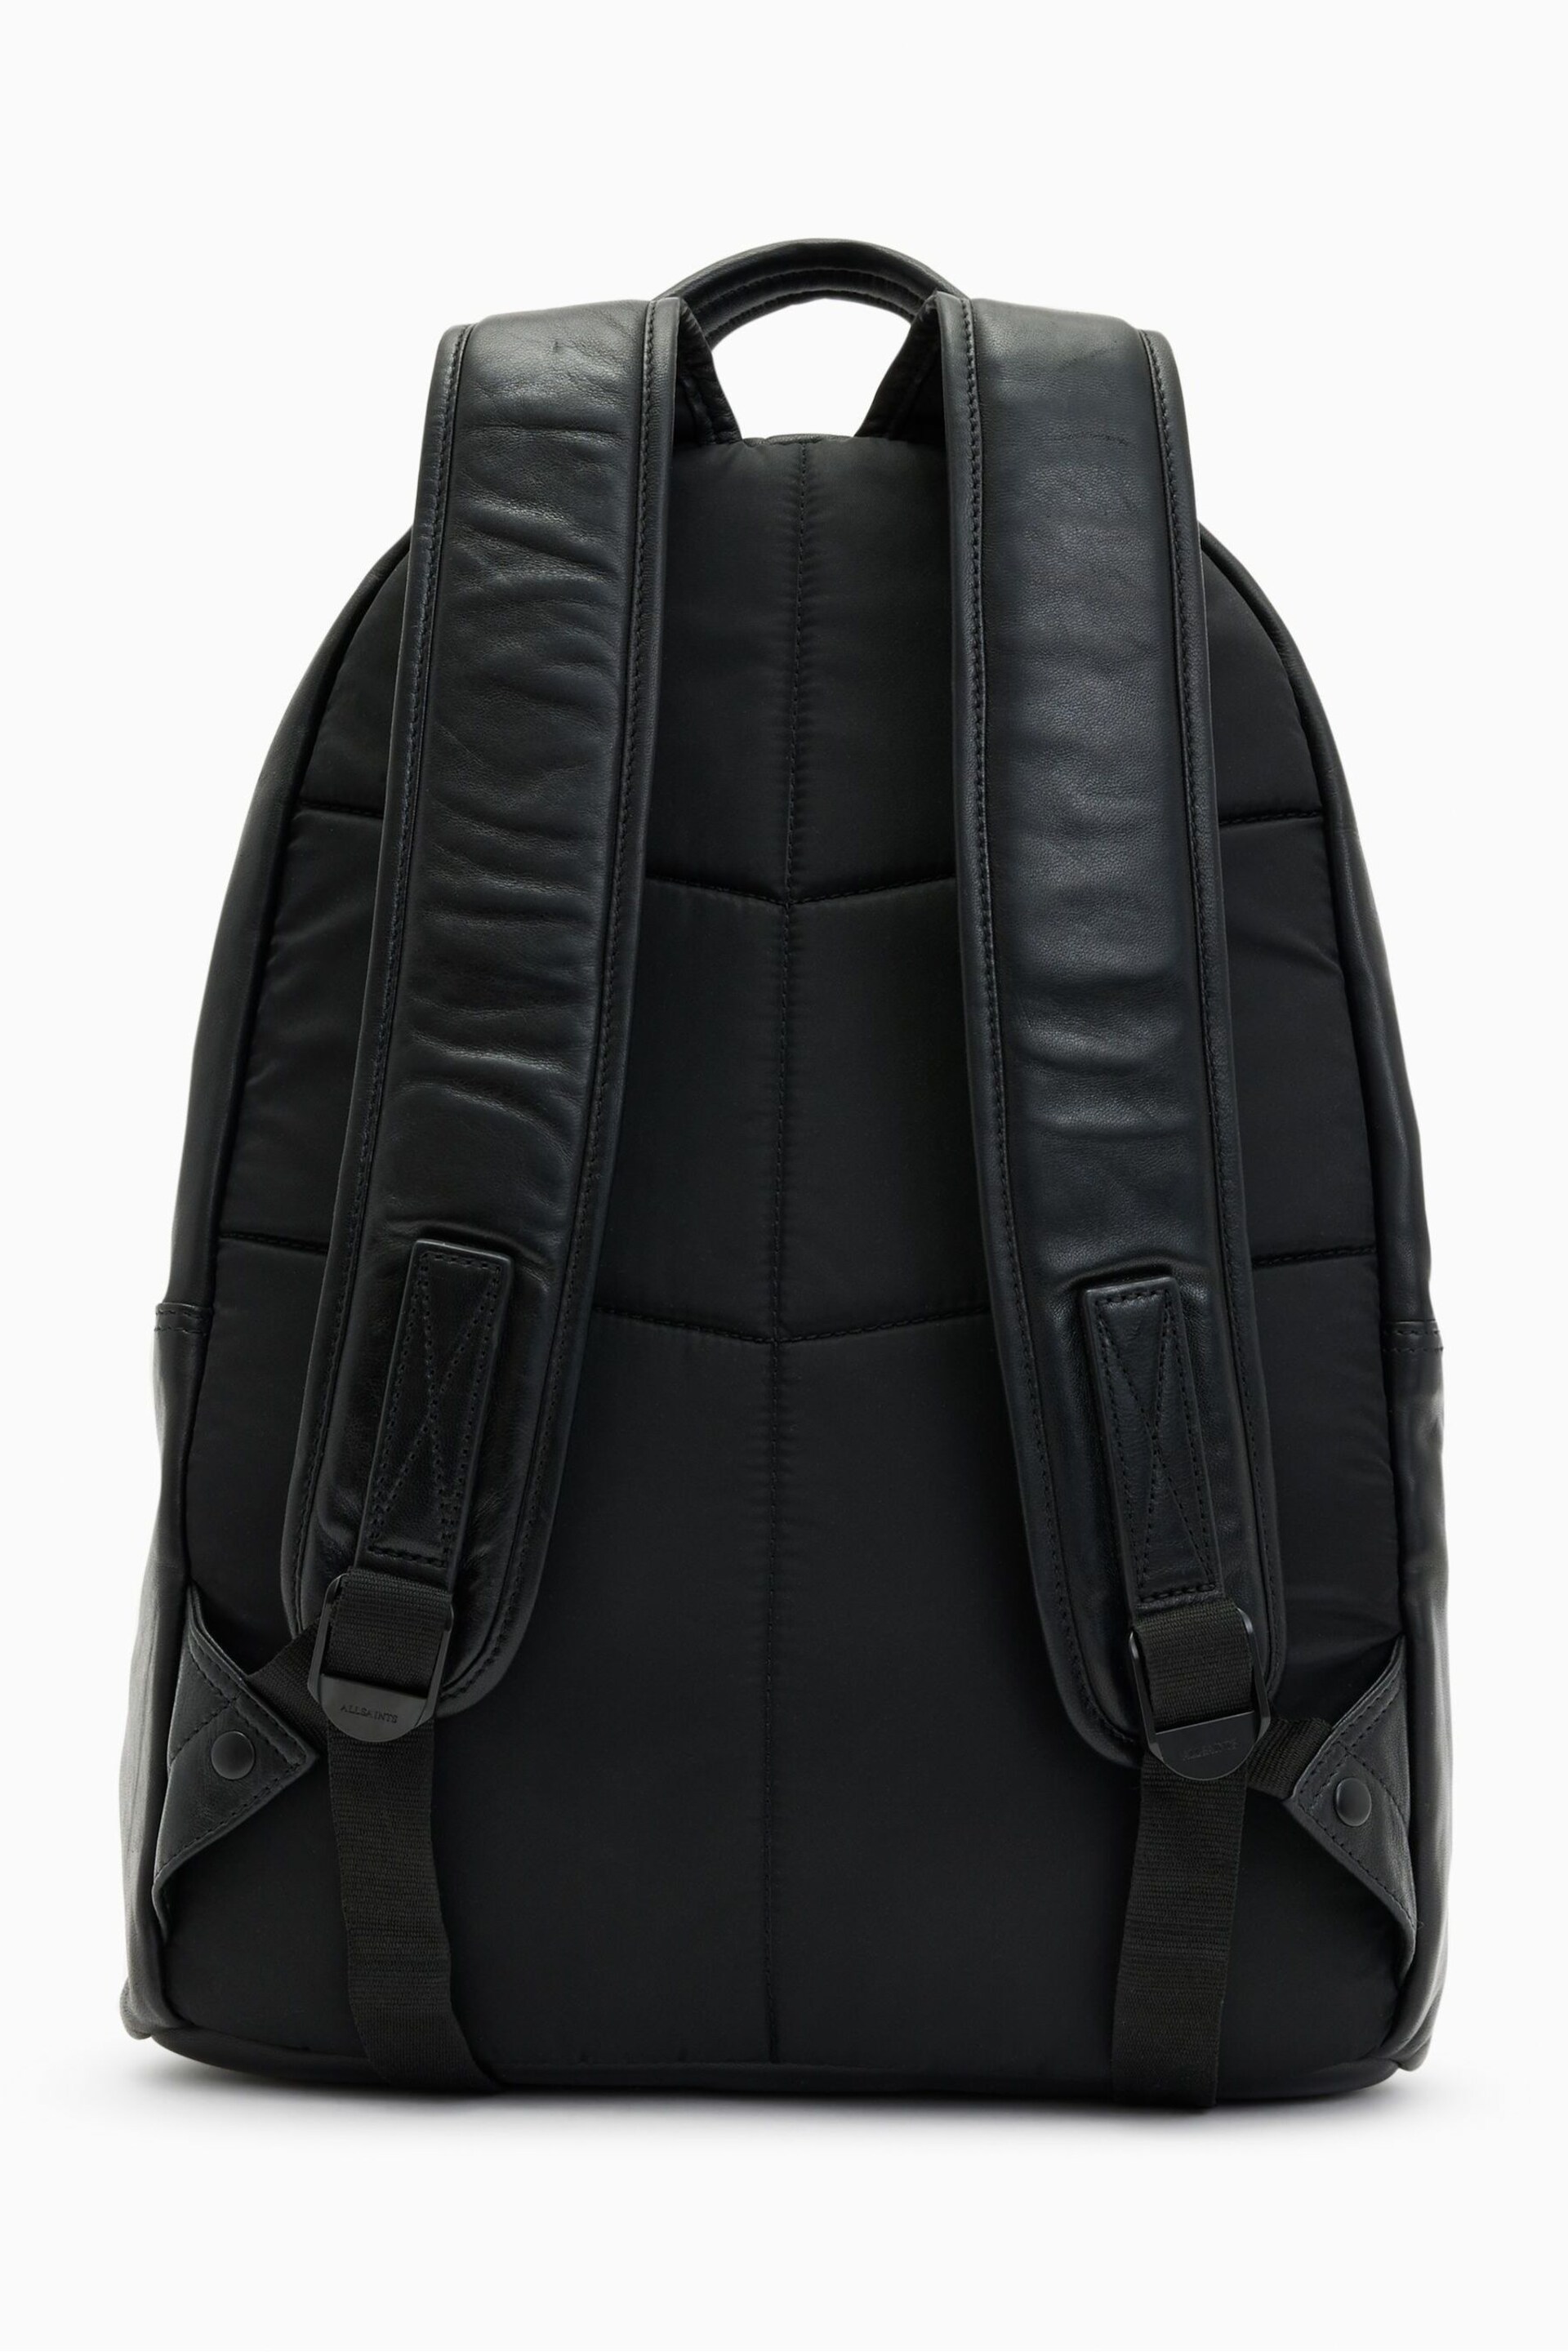 AllSaints Black Carabiner Backpack - Image 3 of 7